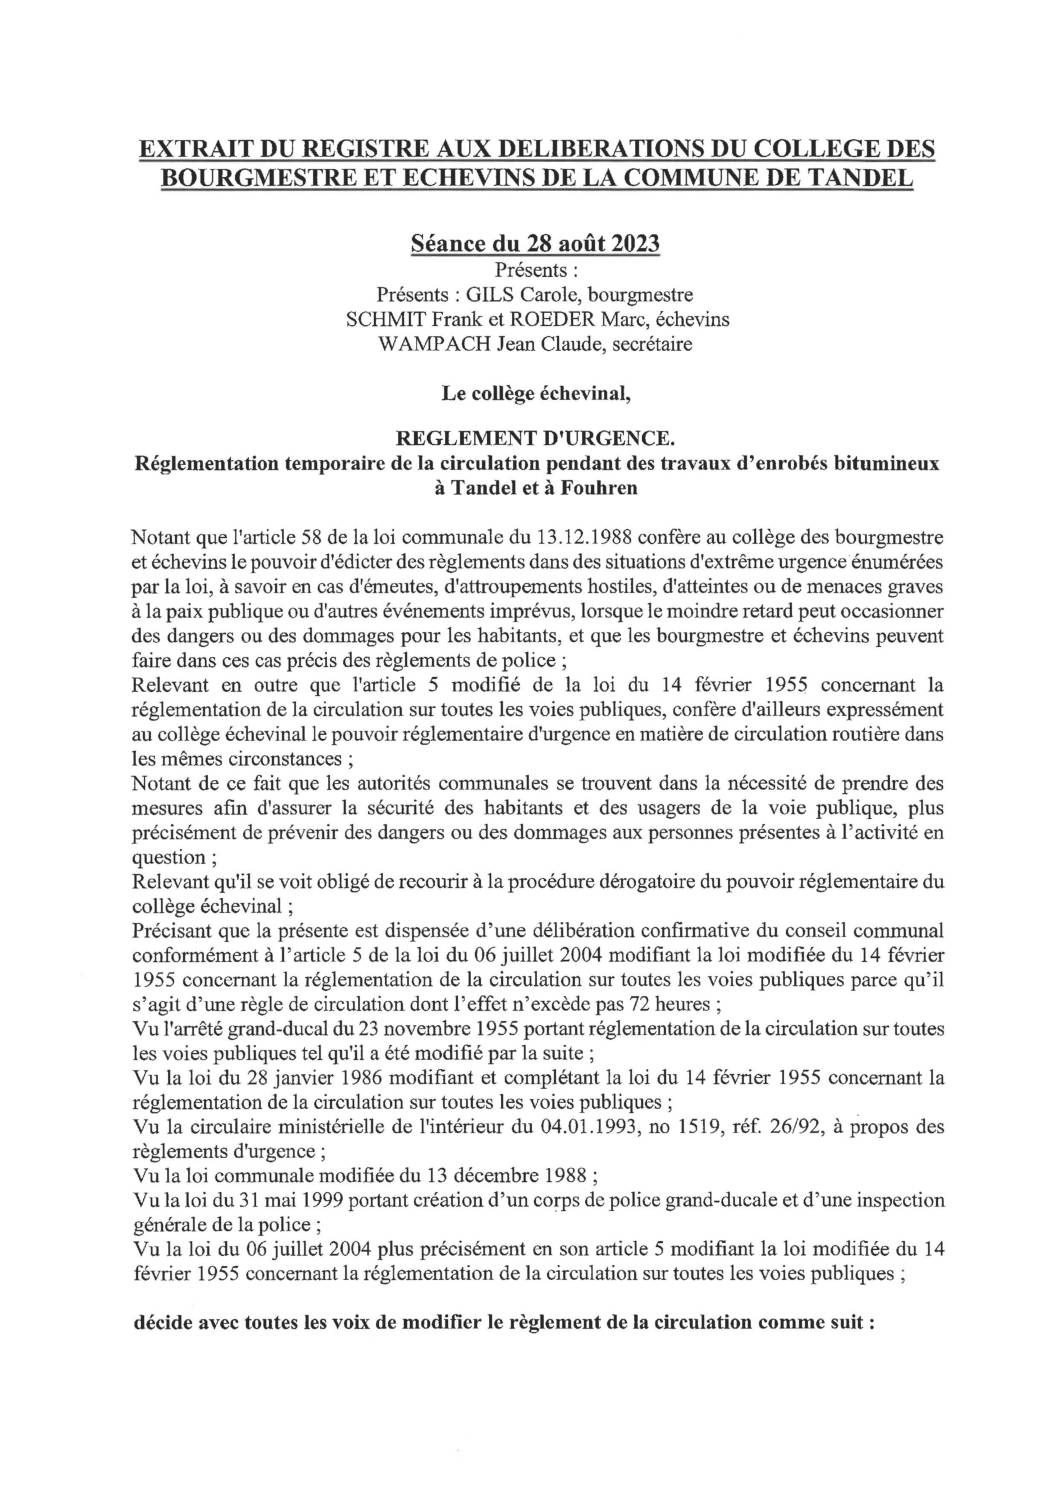 Règlement urgence circulation - Travaux enrobés bitumineux à Tandel et à Fouhren (signé) (28.08.2023)